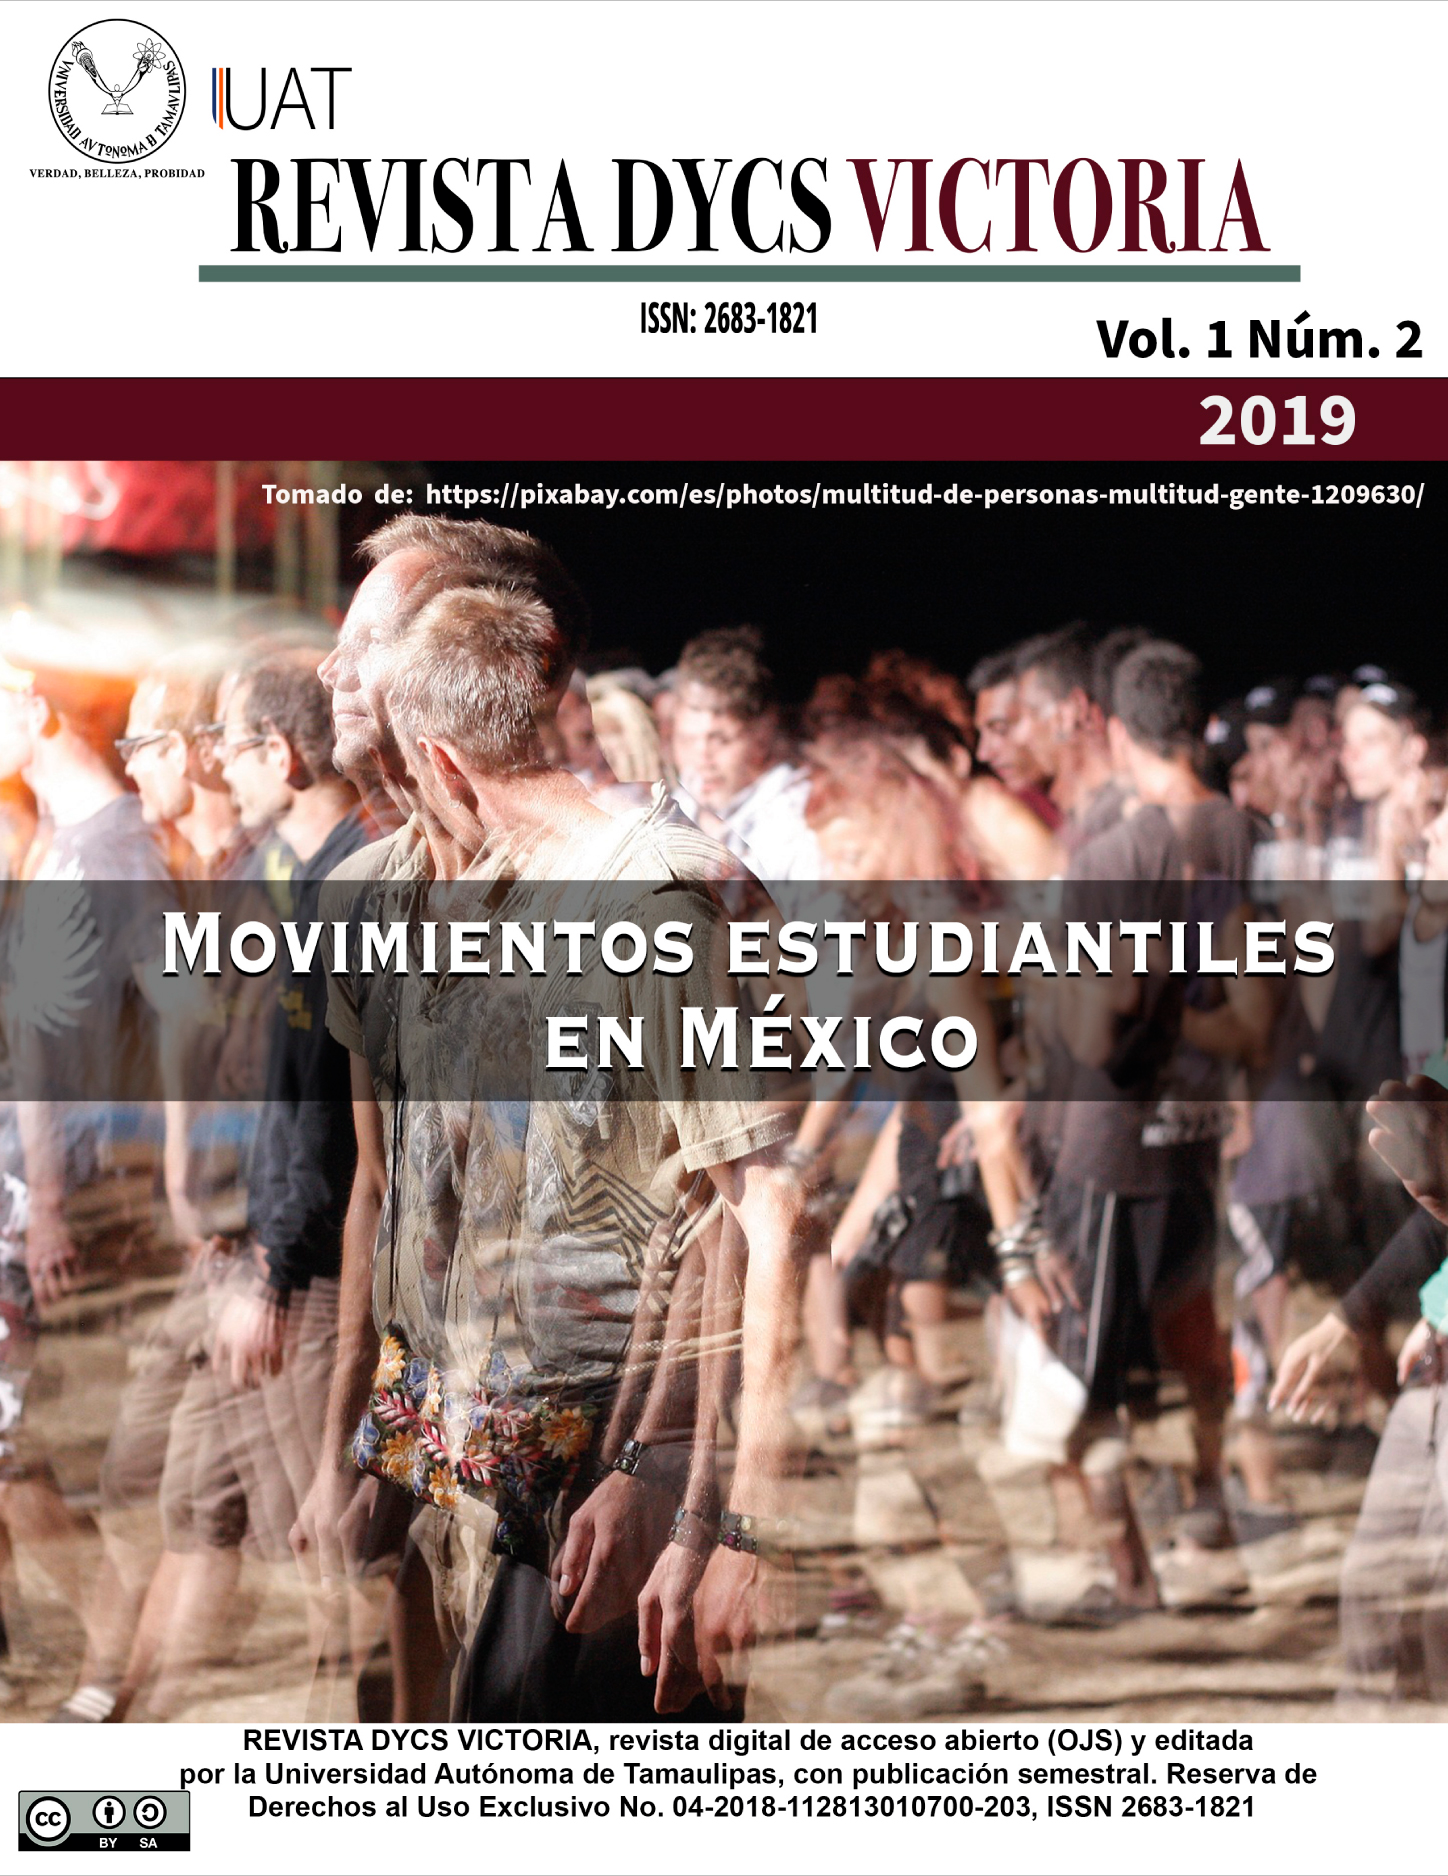 Movimientos estudiantiles en México